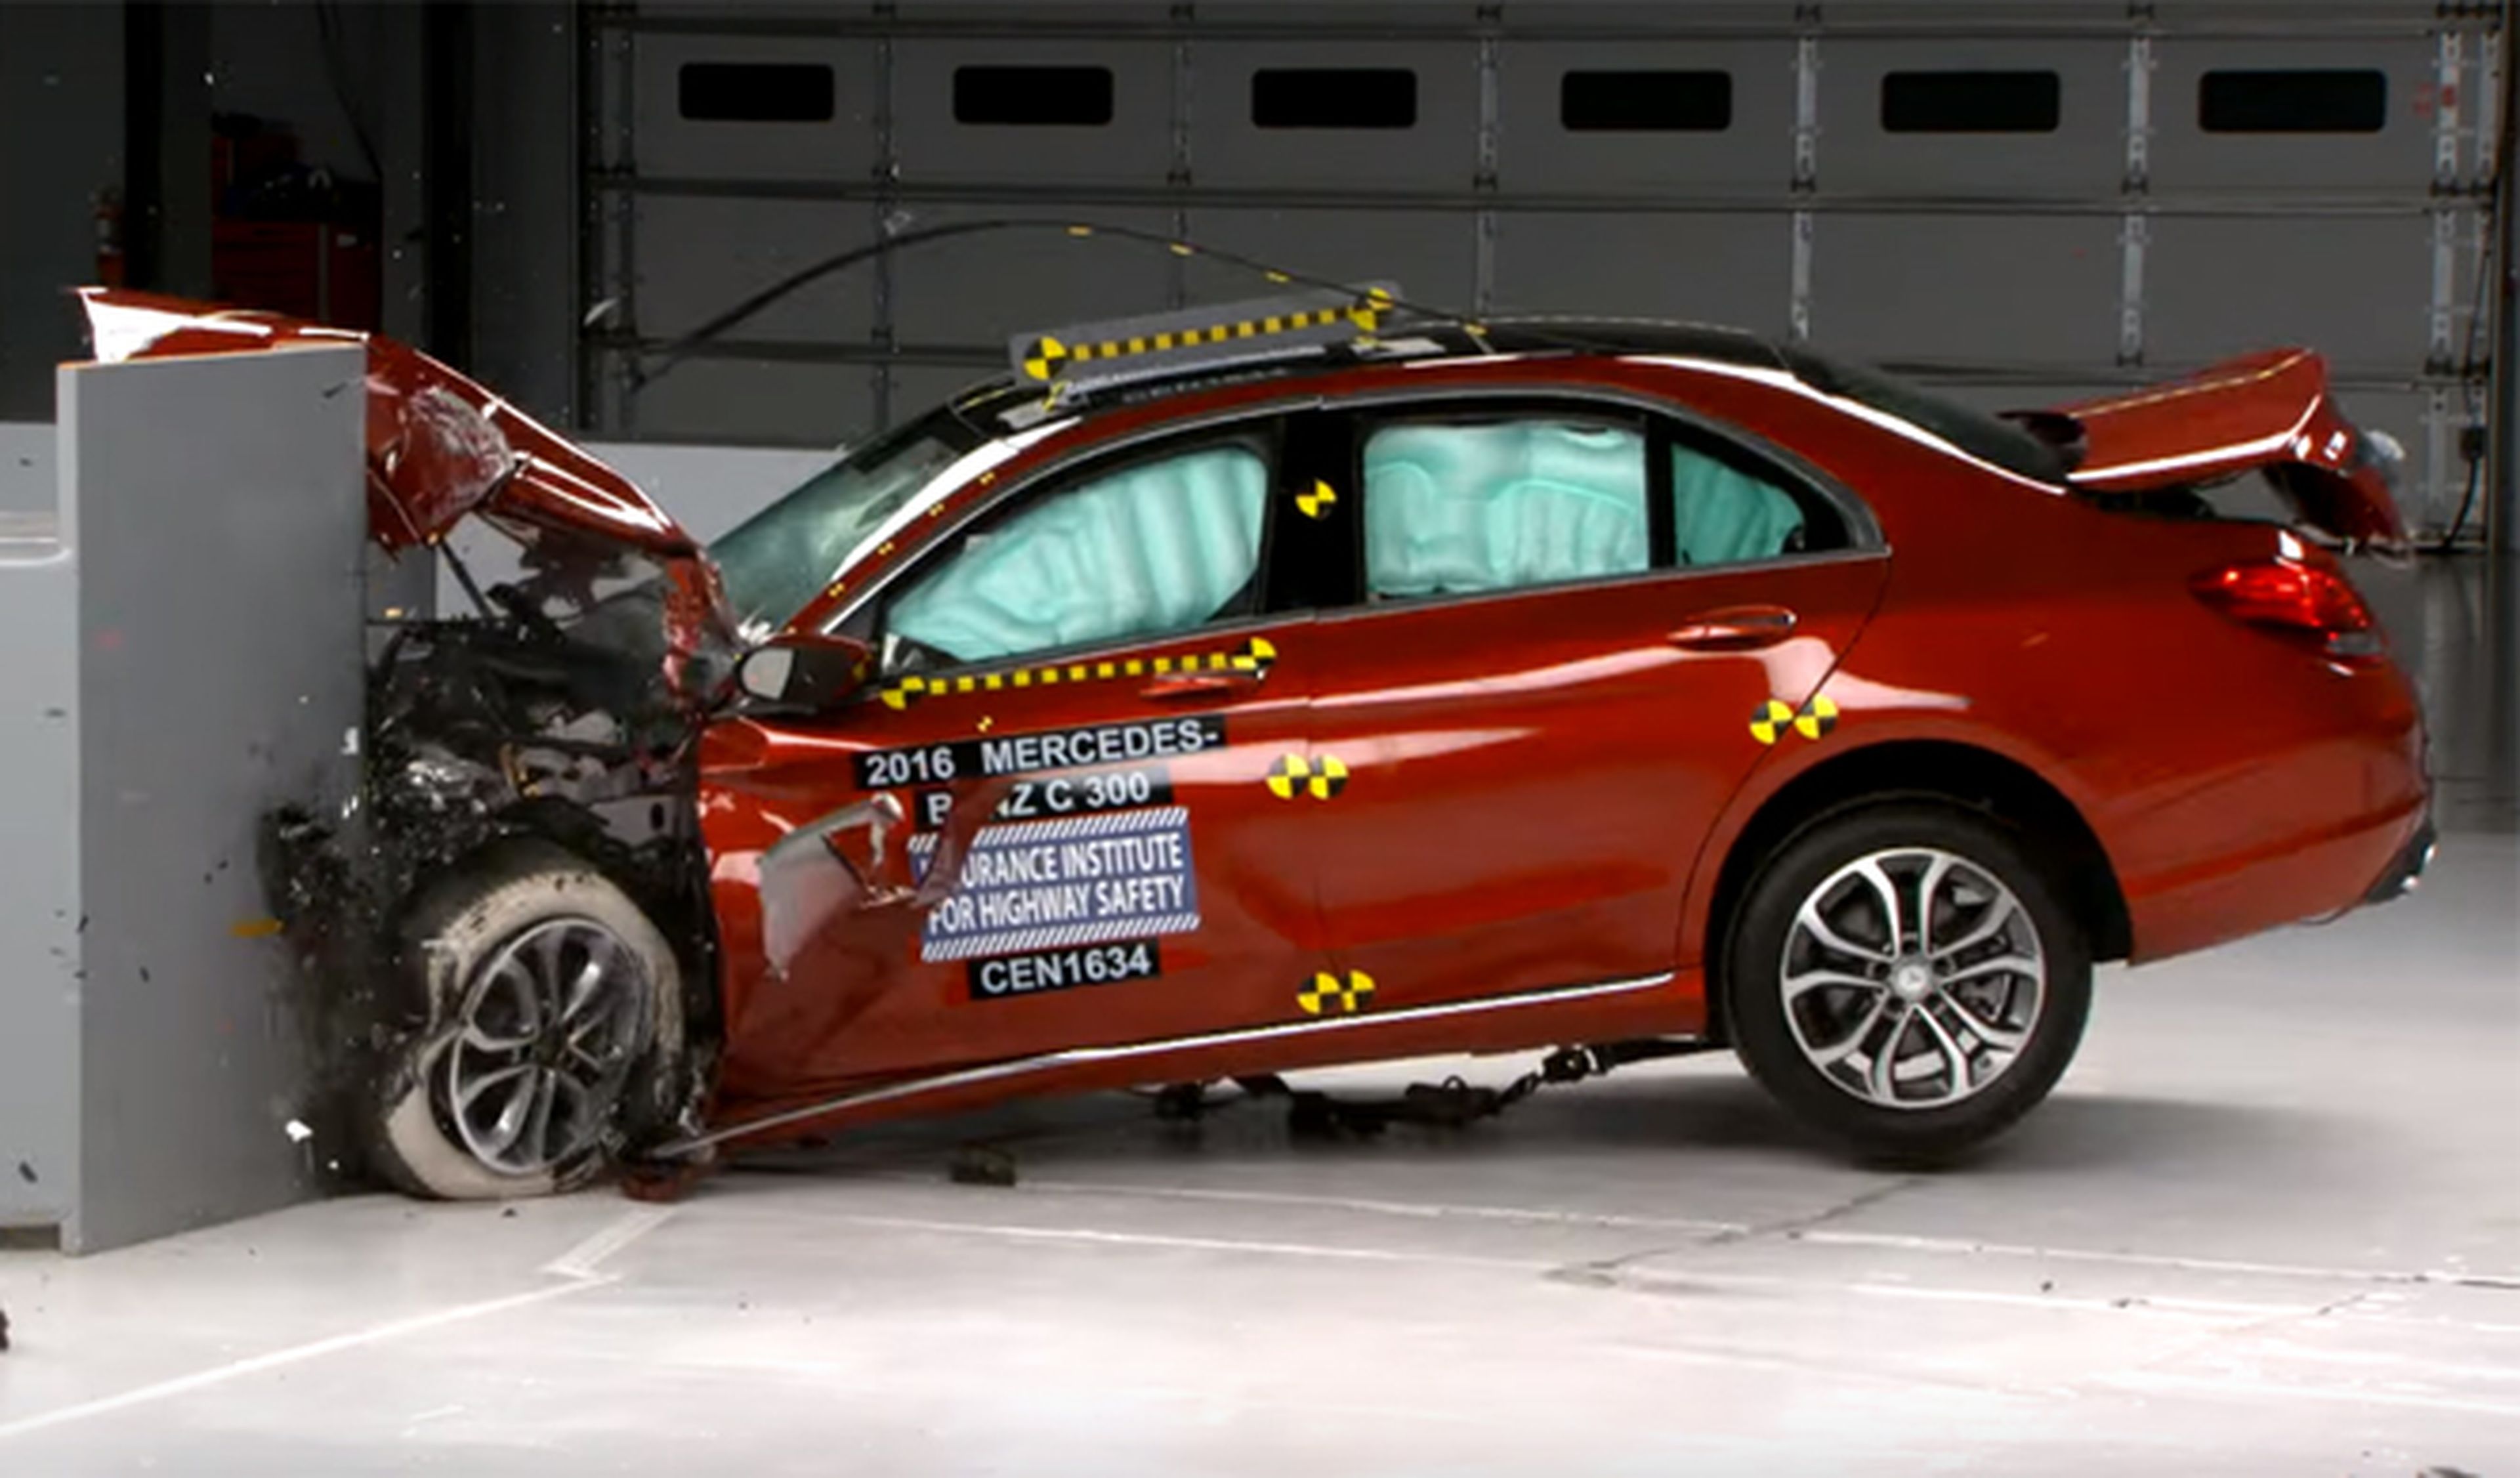 Vídeo: el Mercedes Clase C es uno de los coches más seguros